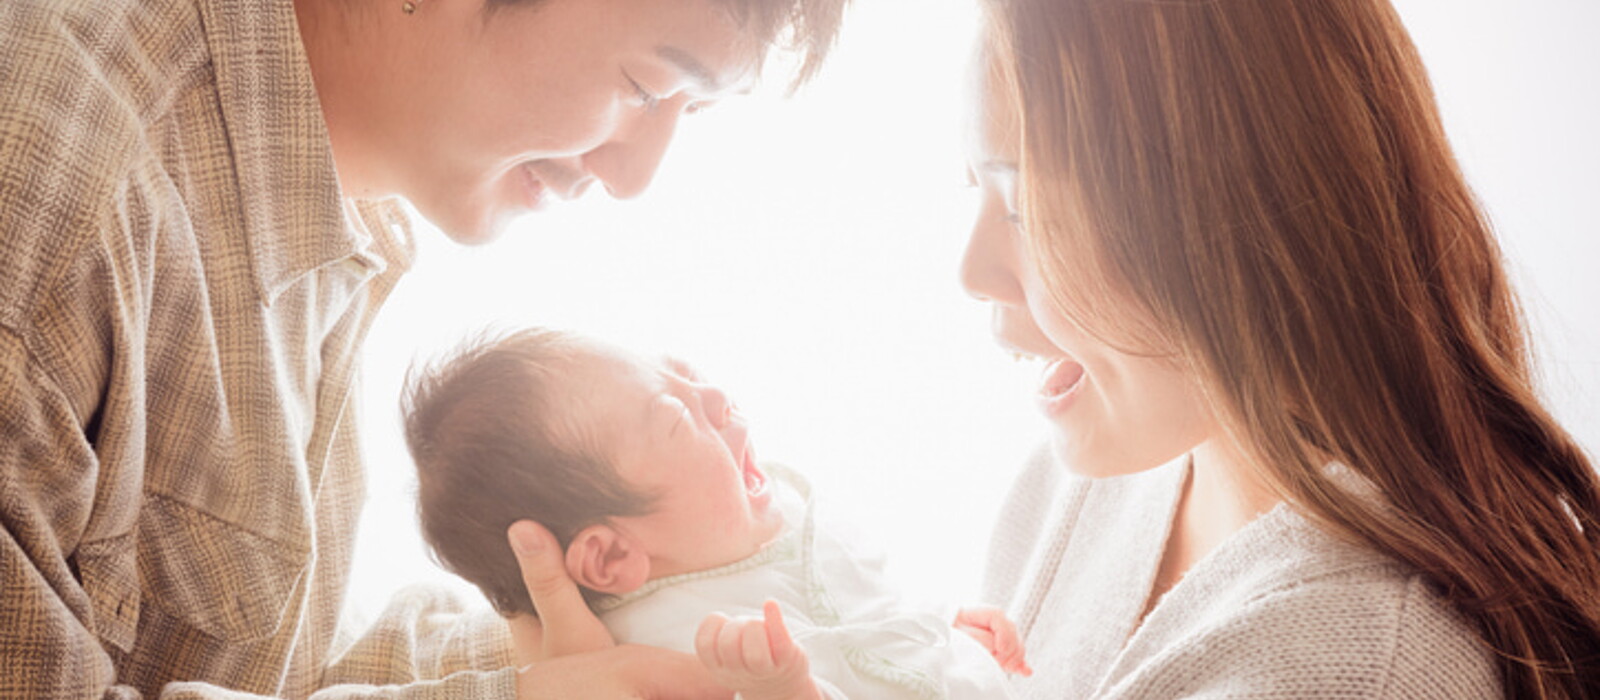 11 วิธีการเลี้ยงทารกแรกเกิด - 1 เดือน ที่พ่อแม่มือใหม่ต้องรู้